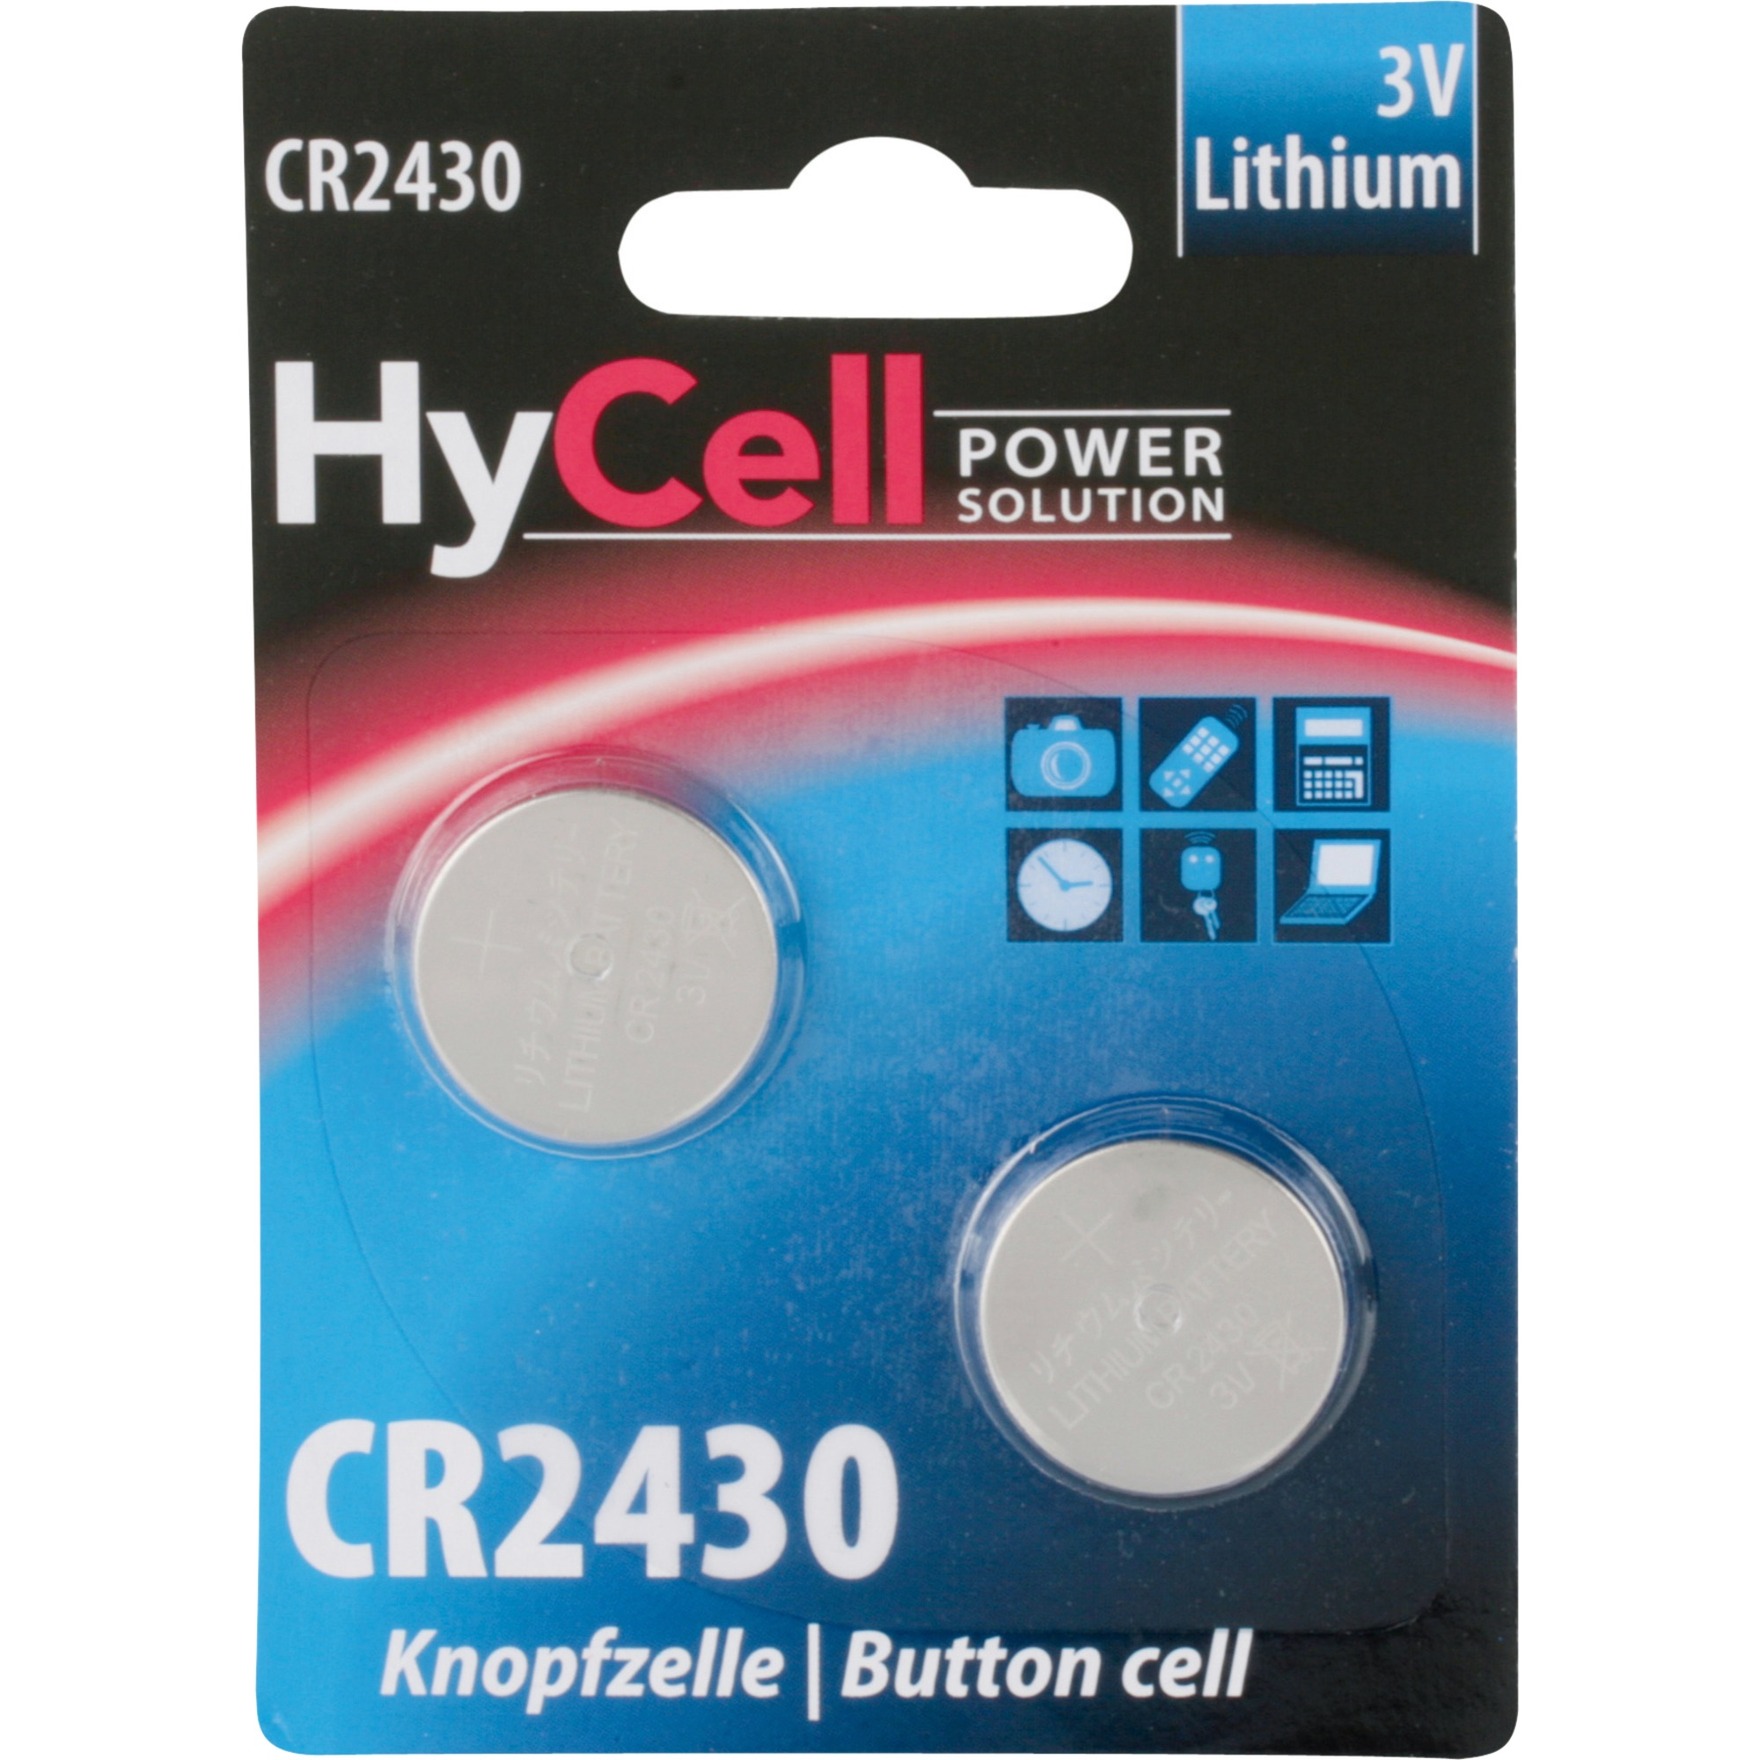 Image of Alternate - Lithium Knopfzelle CR2430, Batterie online einkaufen bei Alternate